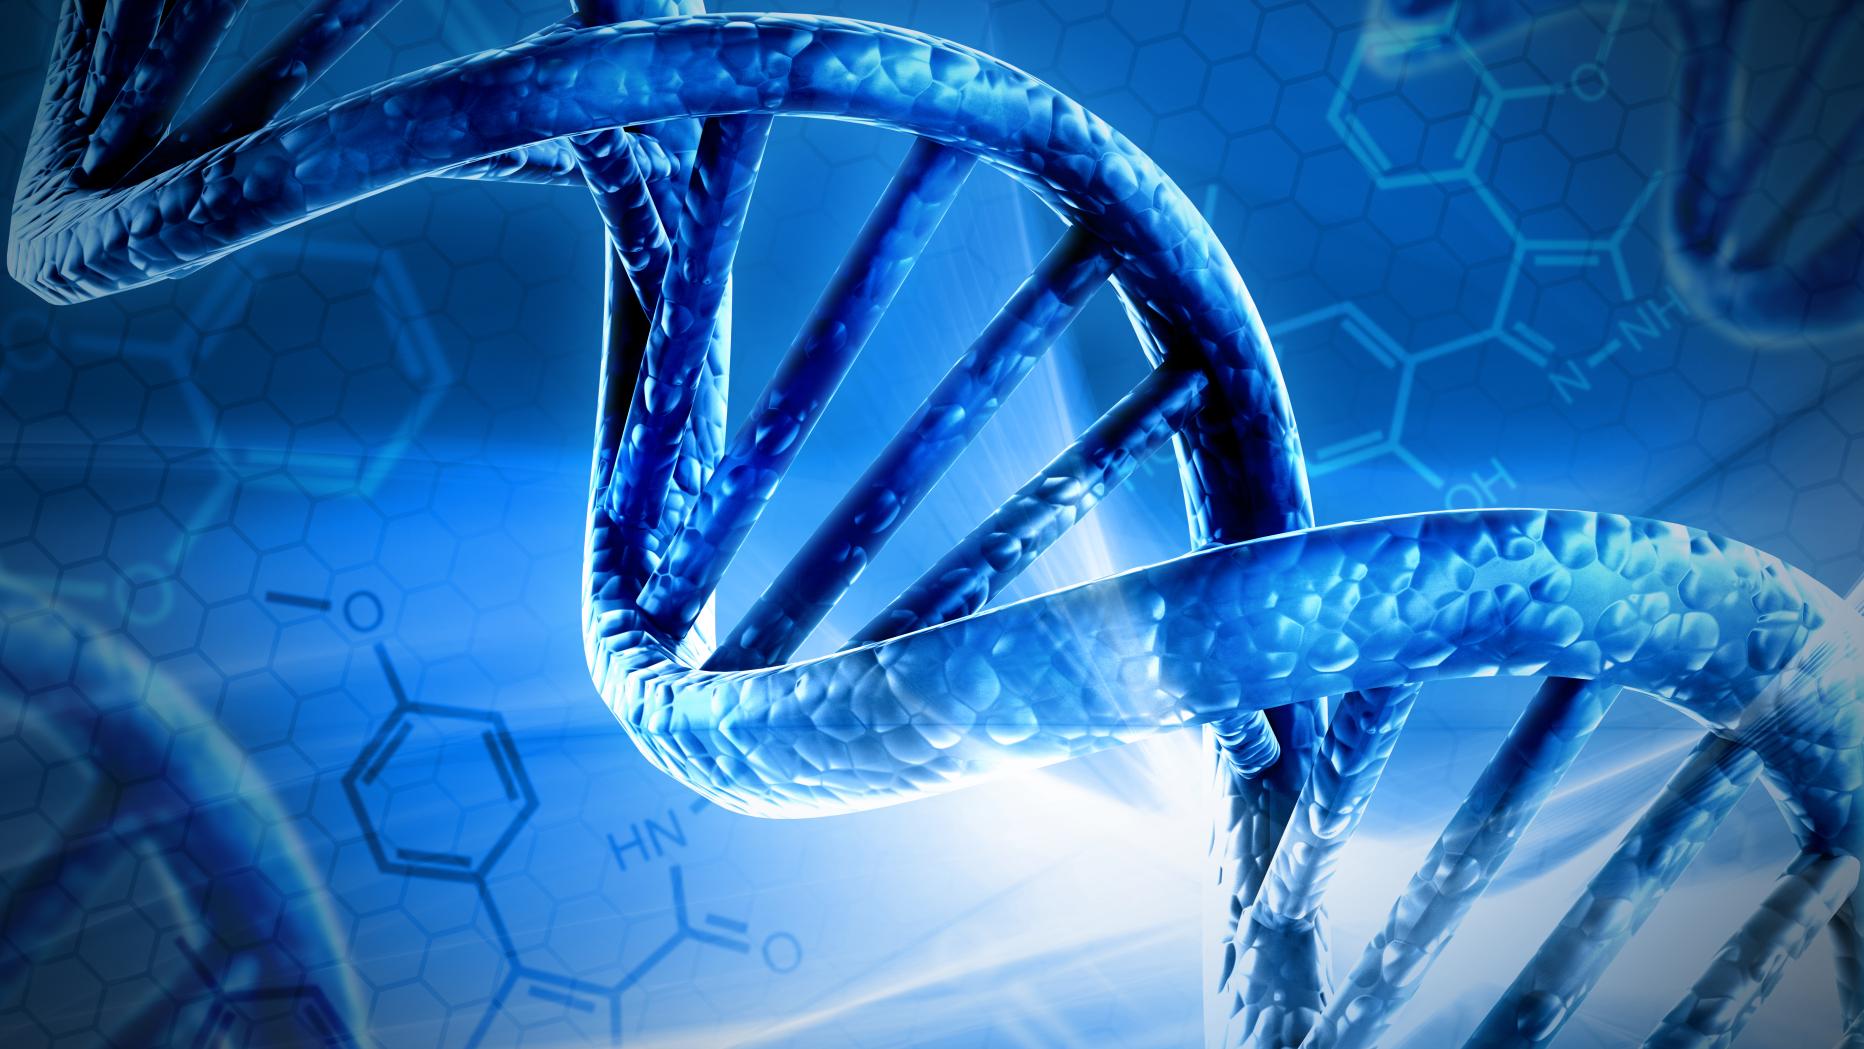 Днк без рекламы ютуб. Цепочка ДНК DNA. Молекулярная цепочка ДНК. Спираль ДНК. Спираль ДНК синяя.